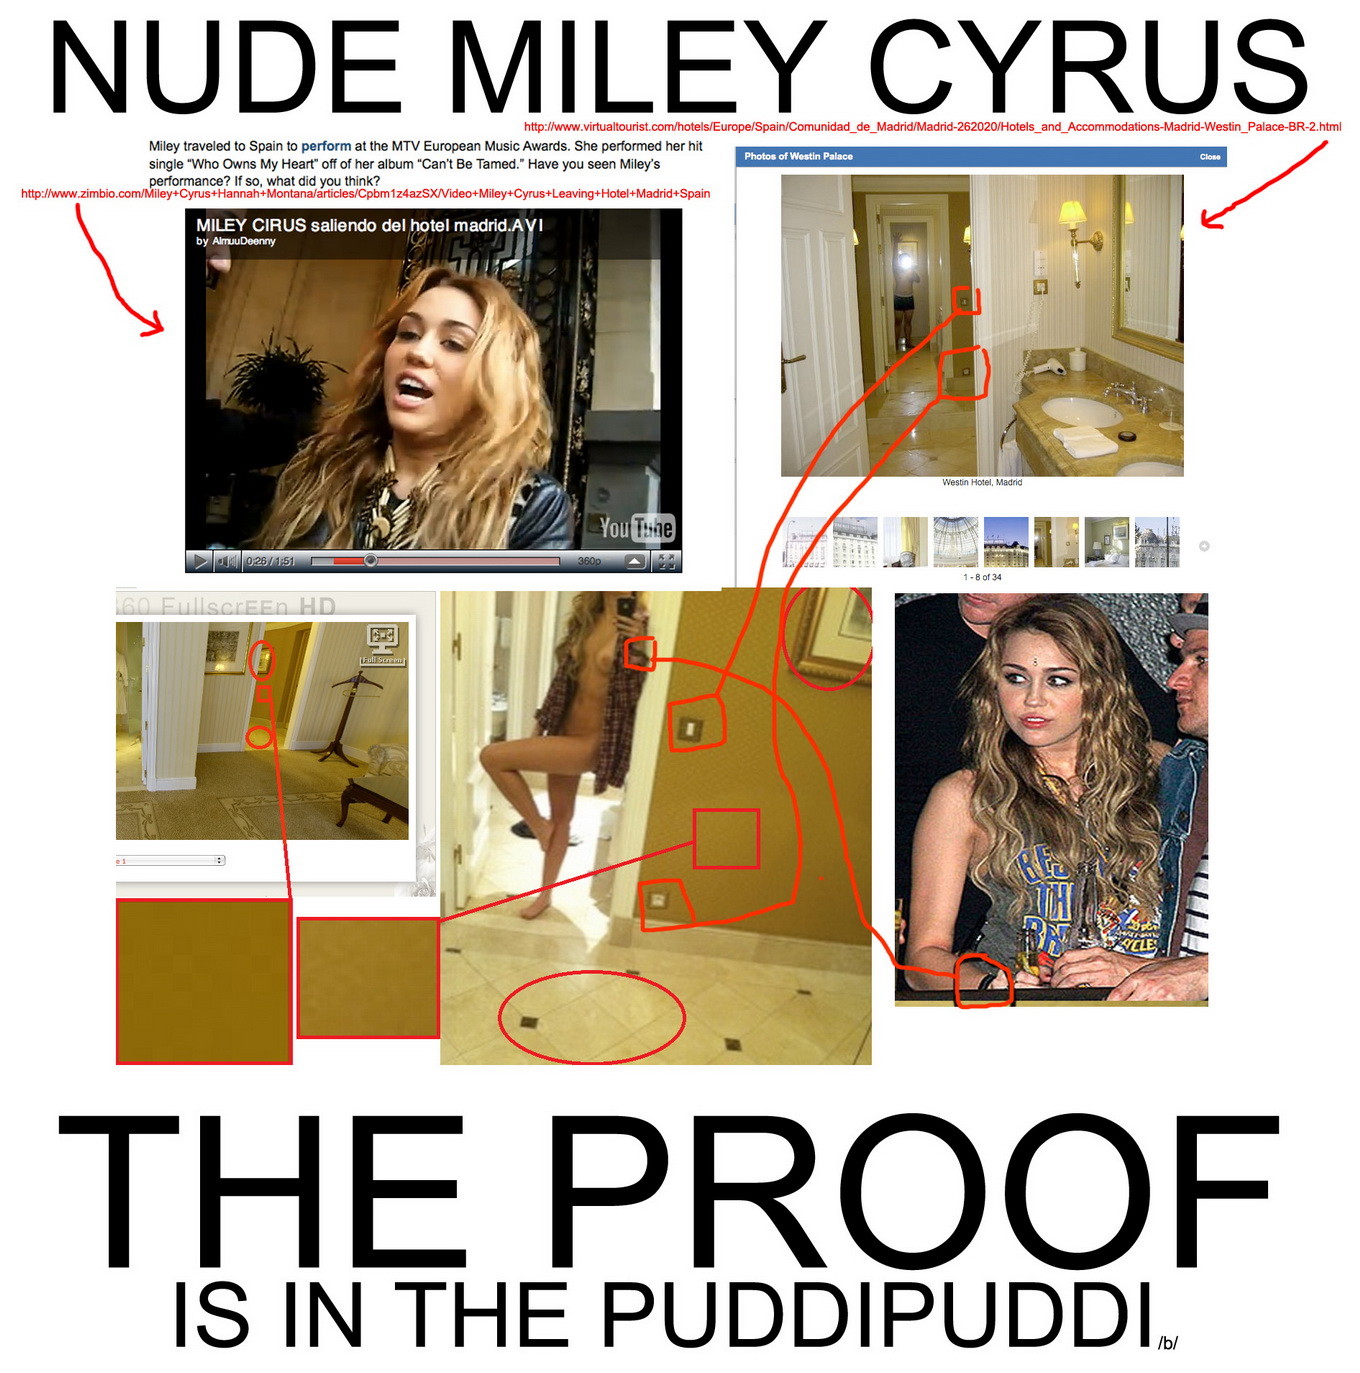 Miley cyrus mostrando su coño tetas en la autofoto realizada en el hotel de madrid
 #75324776